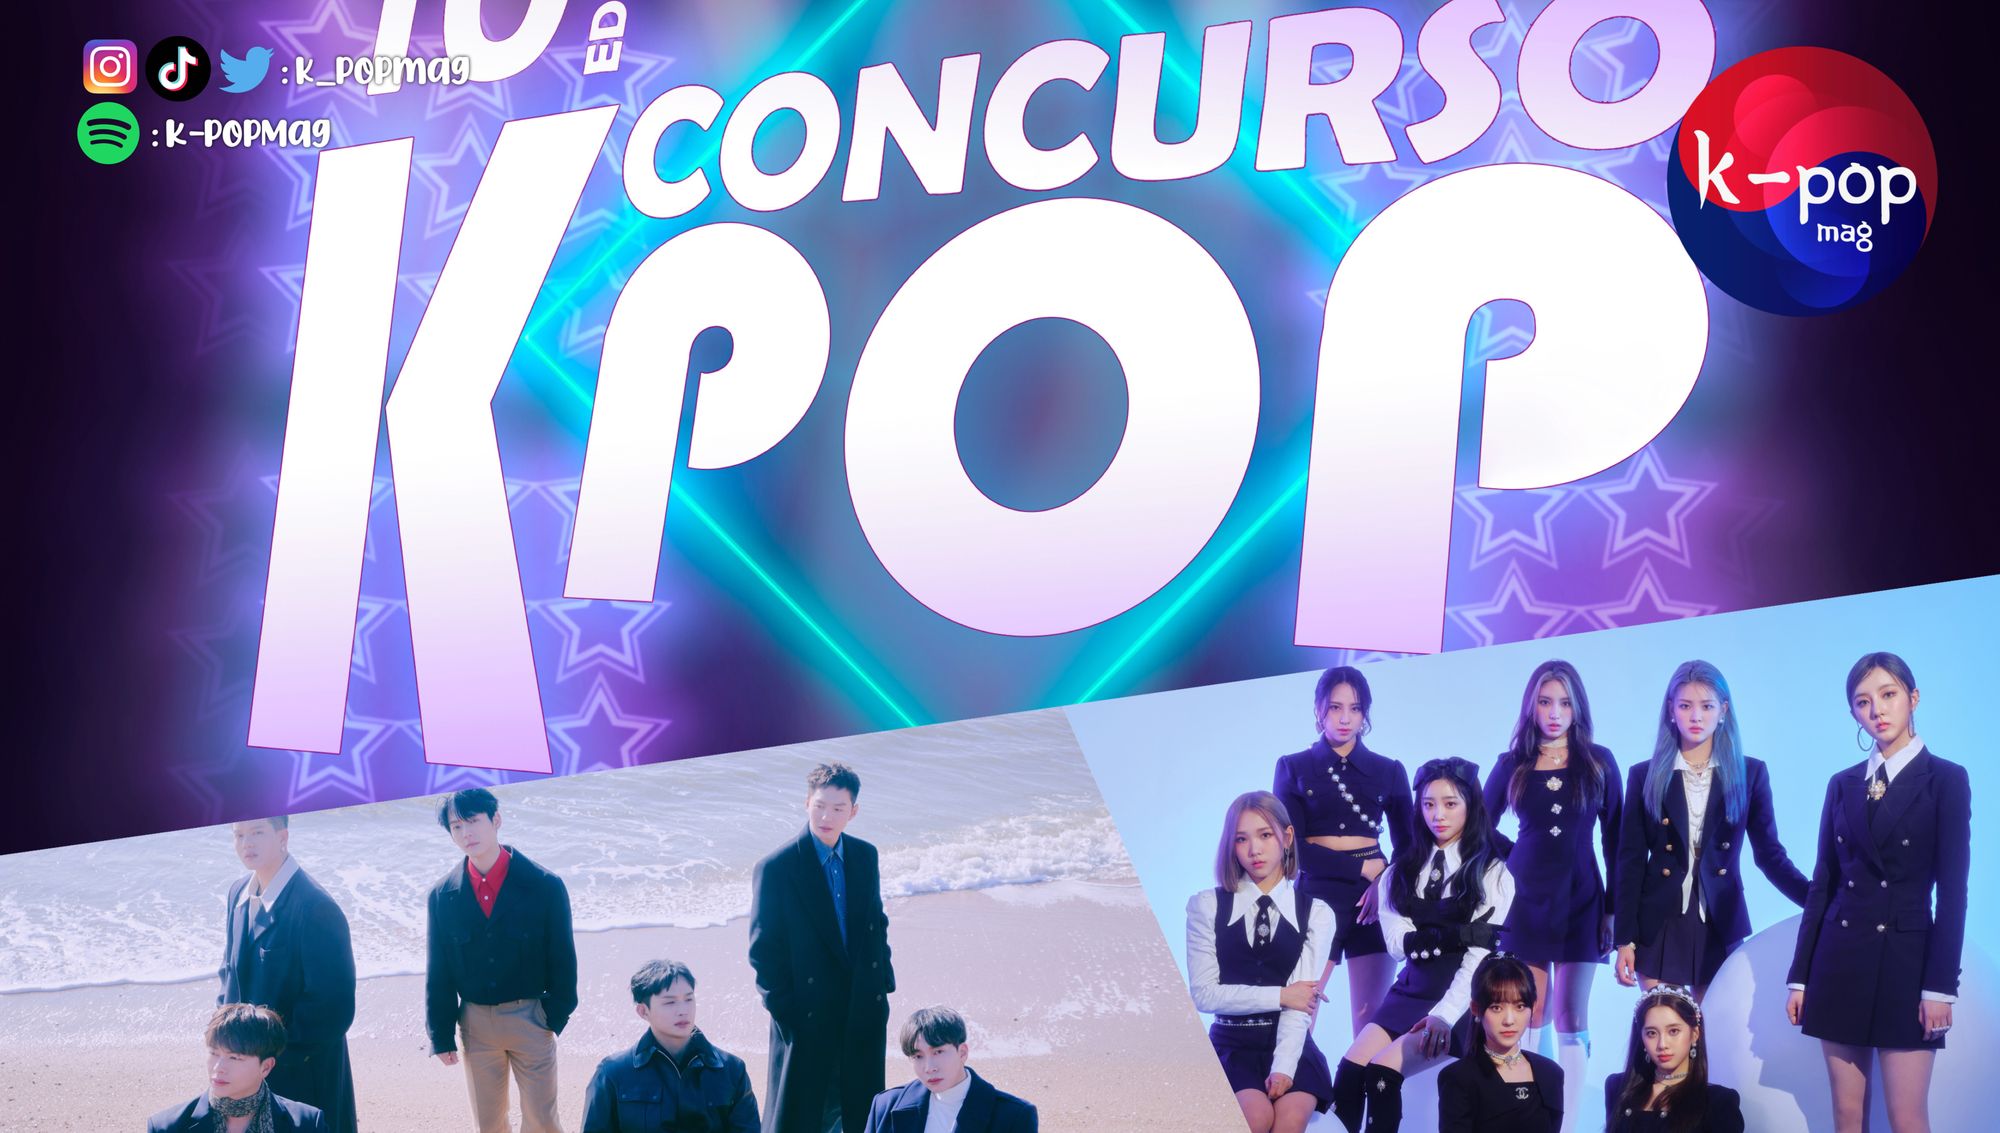 Vuelve el Concurso K-POP en España con su novedosa décima edición